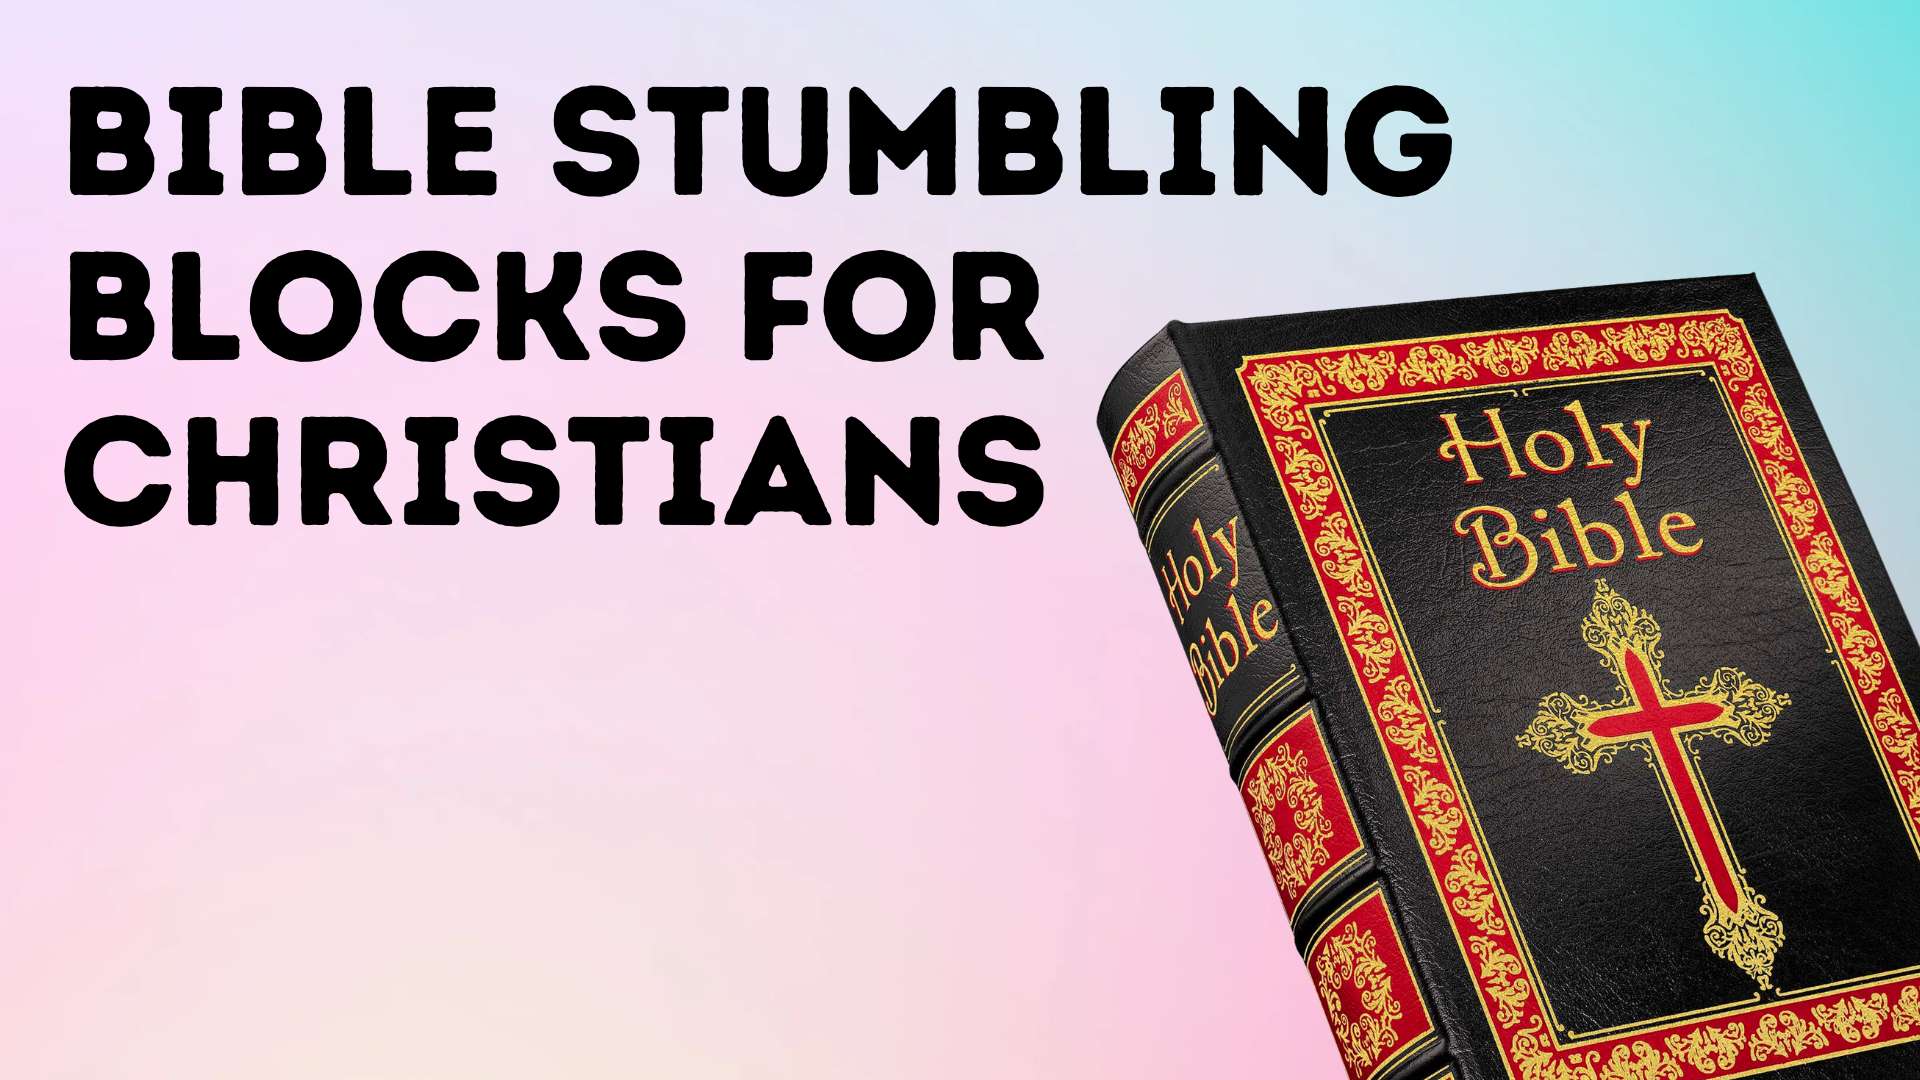 Bible Stumbling Blocks for Christians